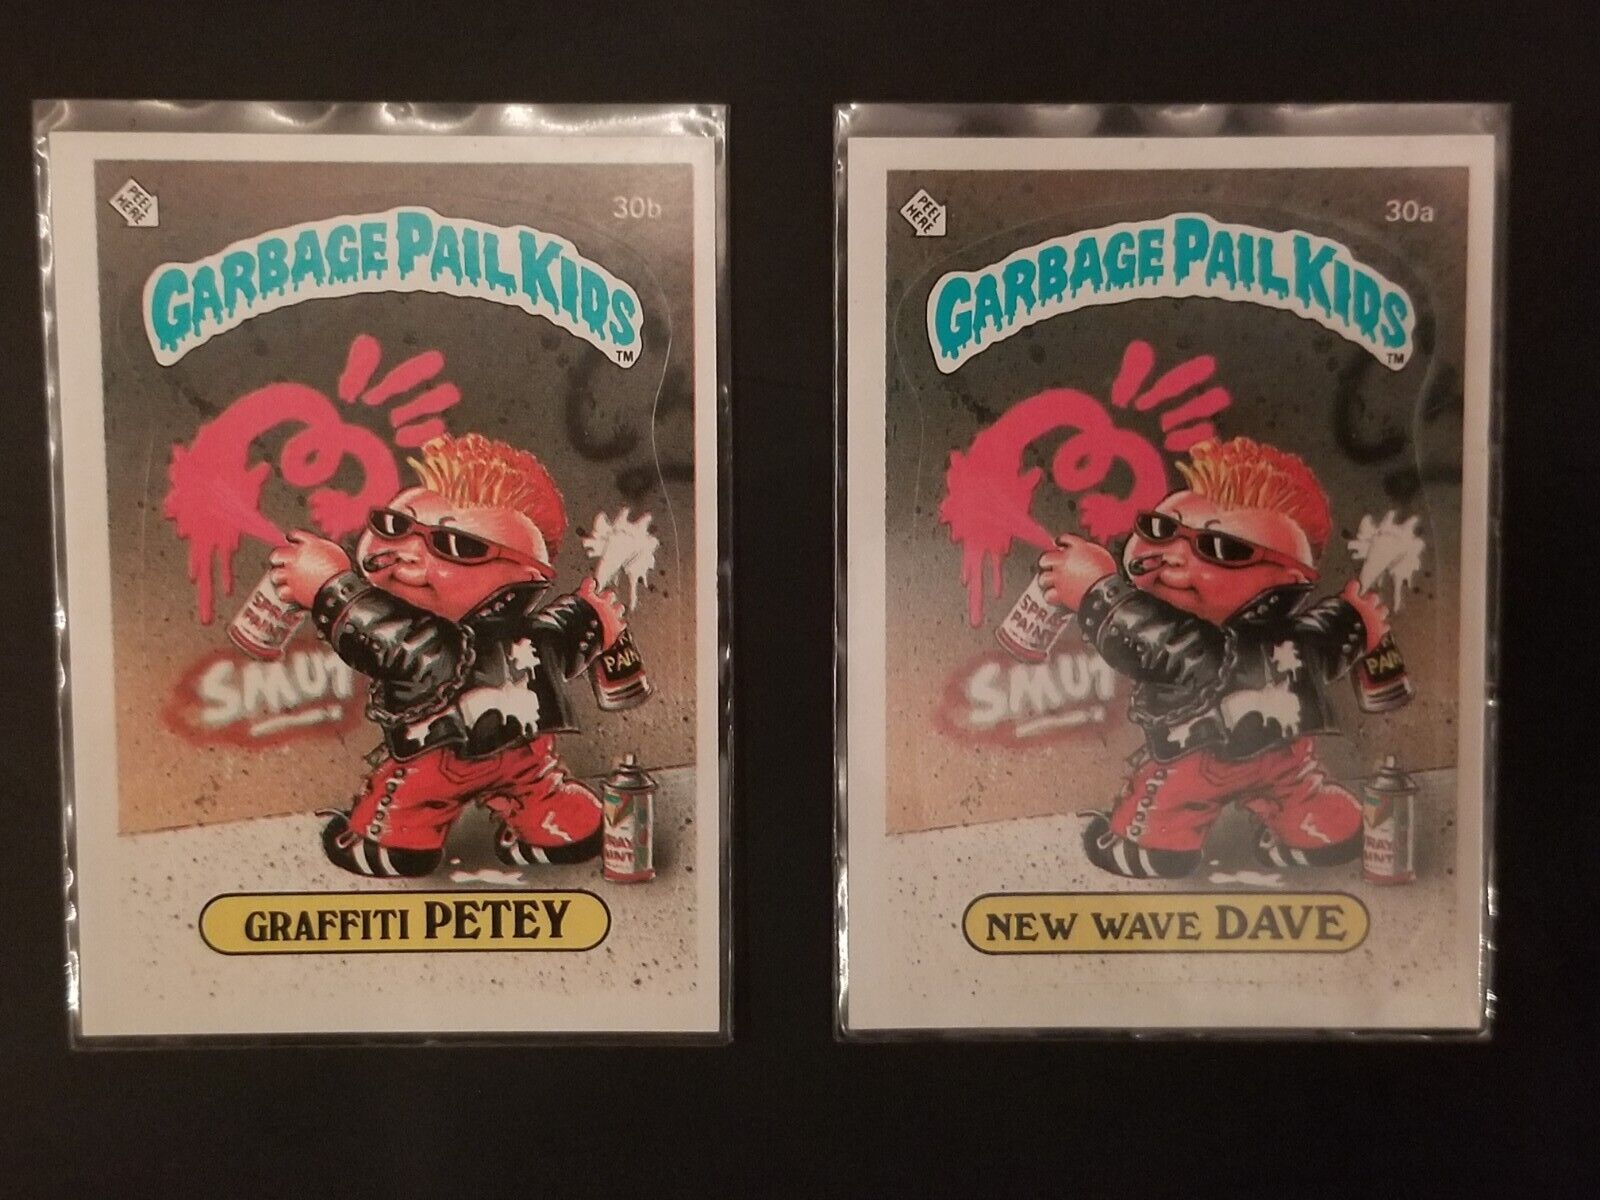 1985Garbage Pail Kids (GPK) OS 1 (30B) Graffiti Petey&New wave dave. Topps